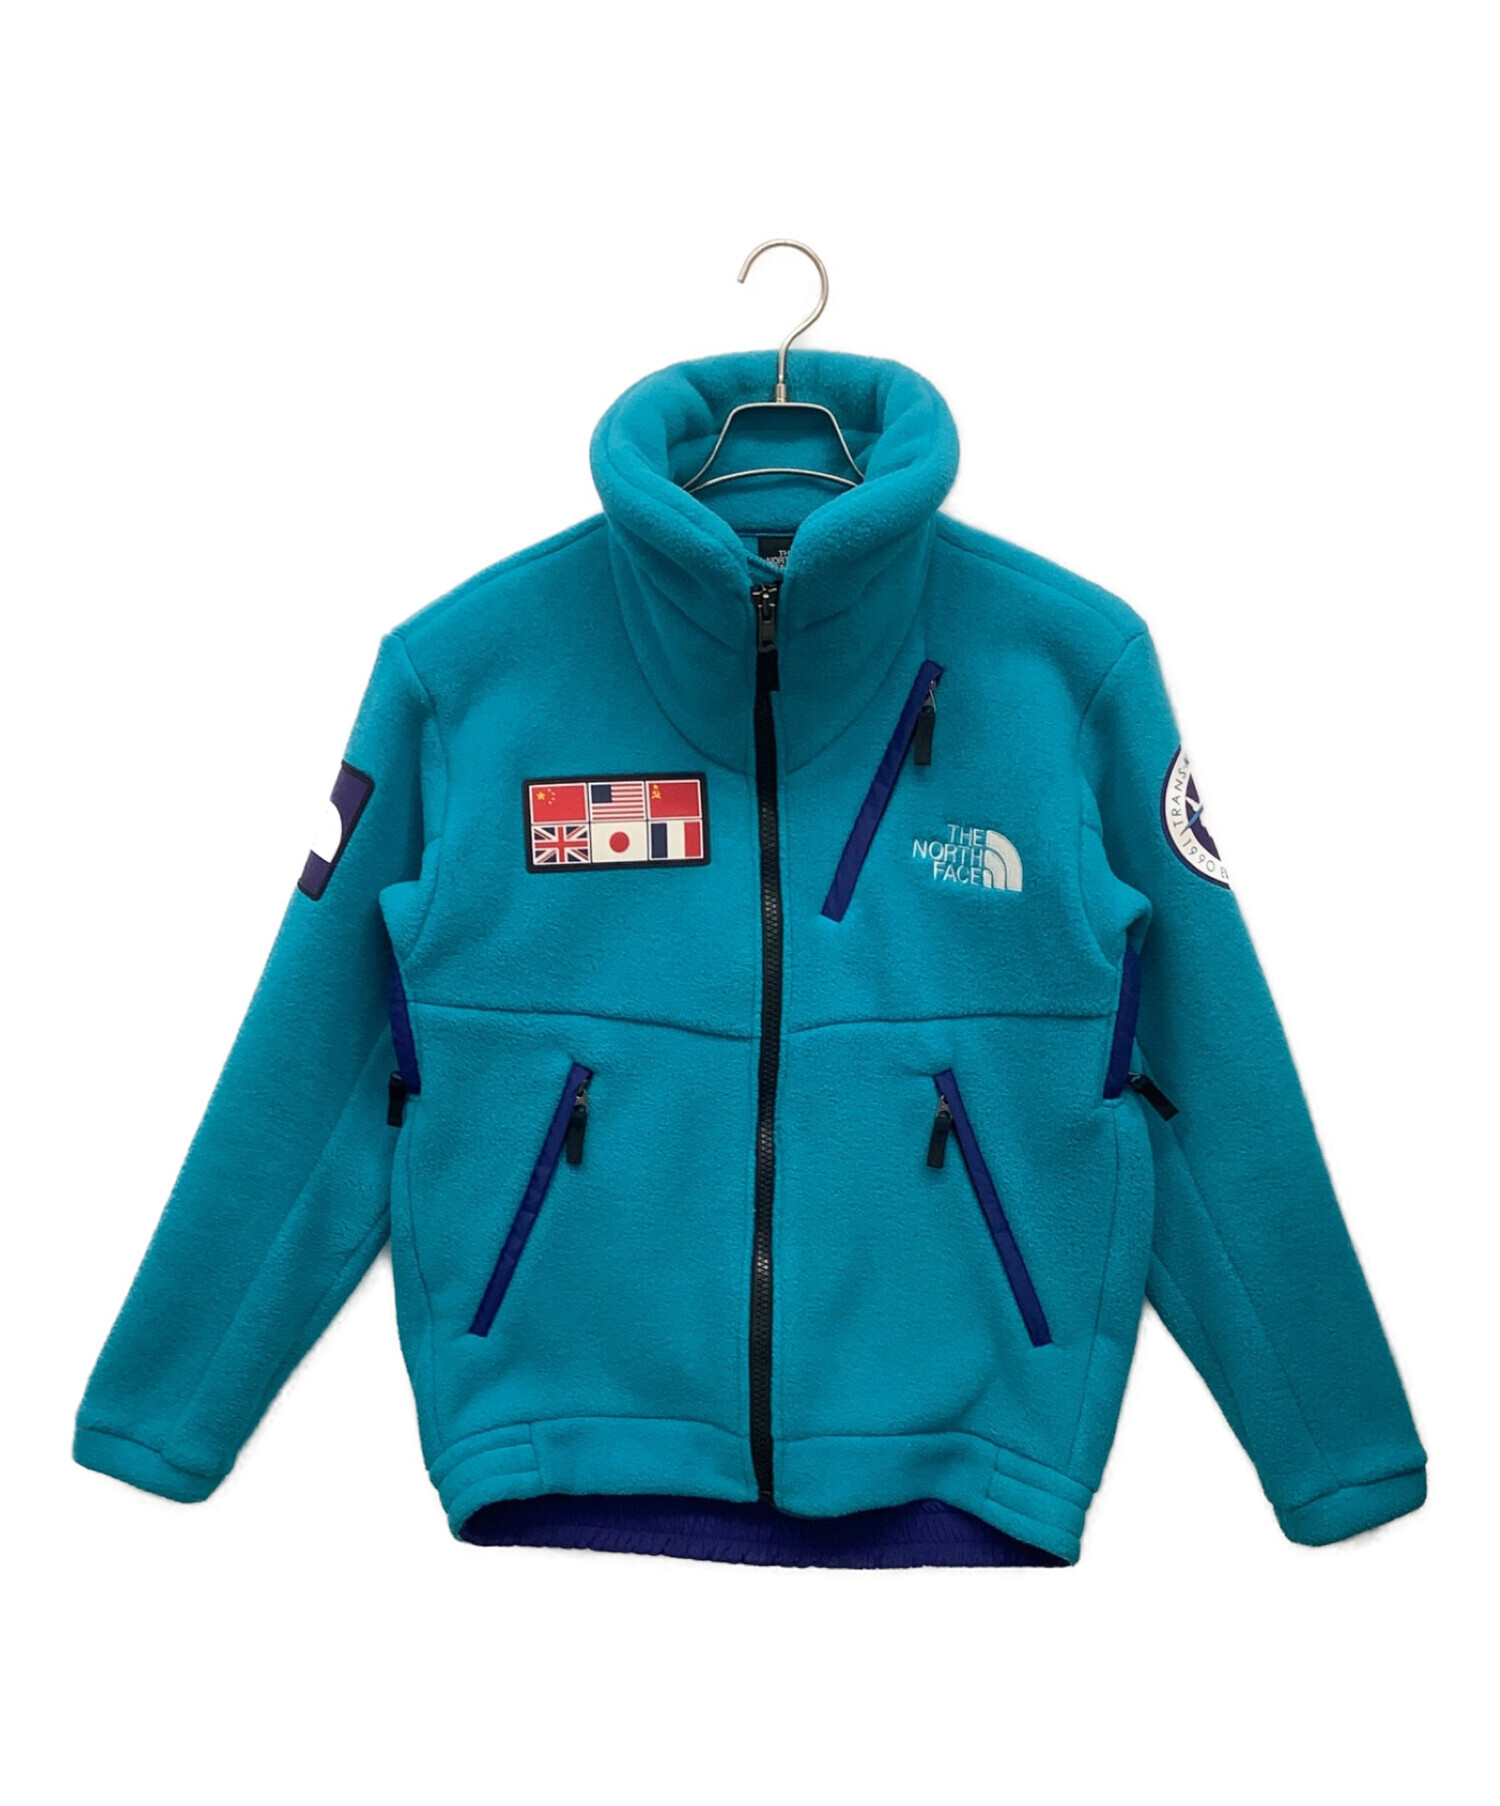 used_panジャケットノースフェイス Trans Antarctica fleece jacket